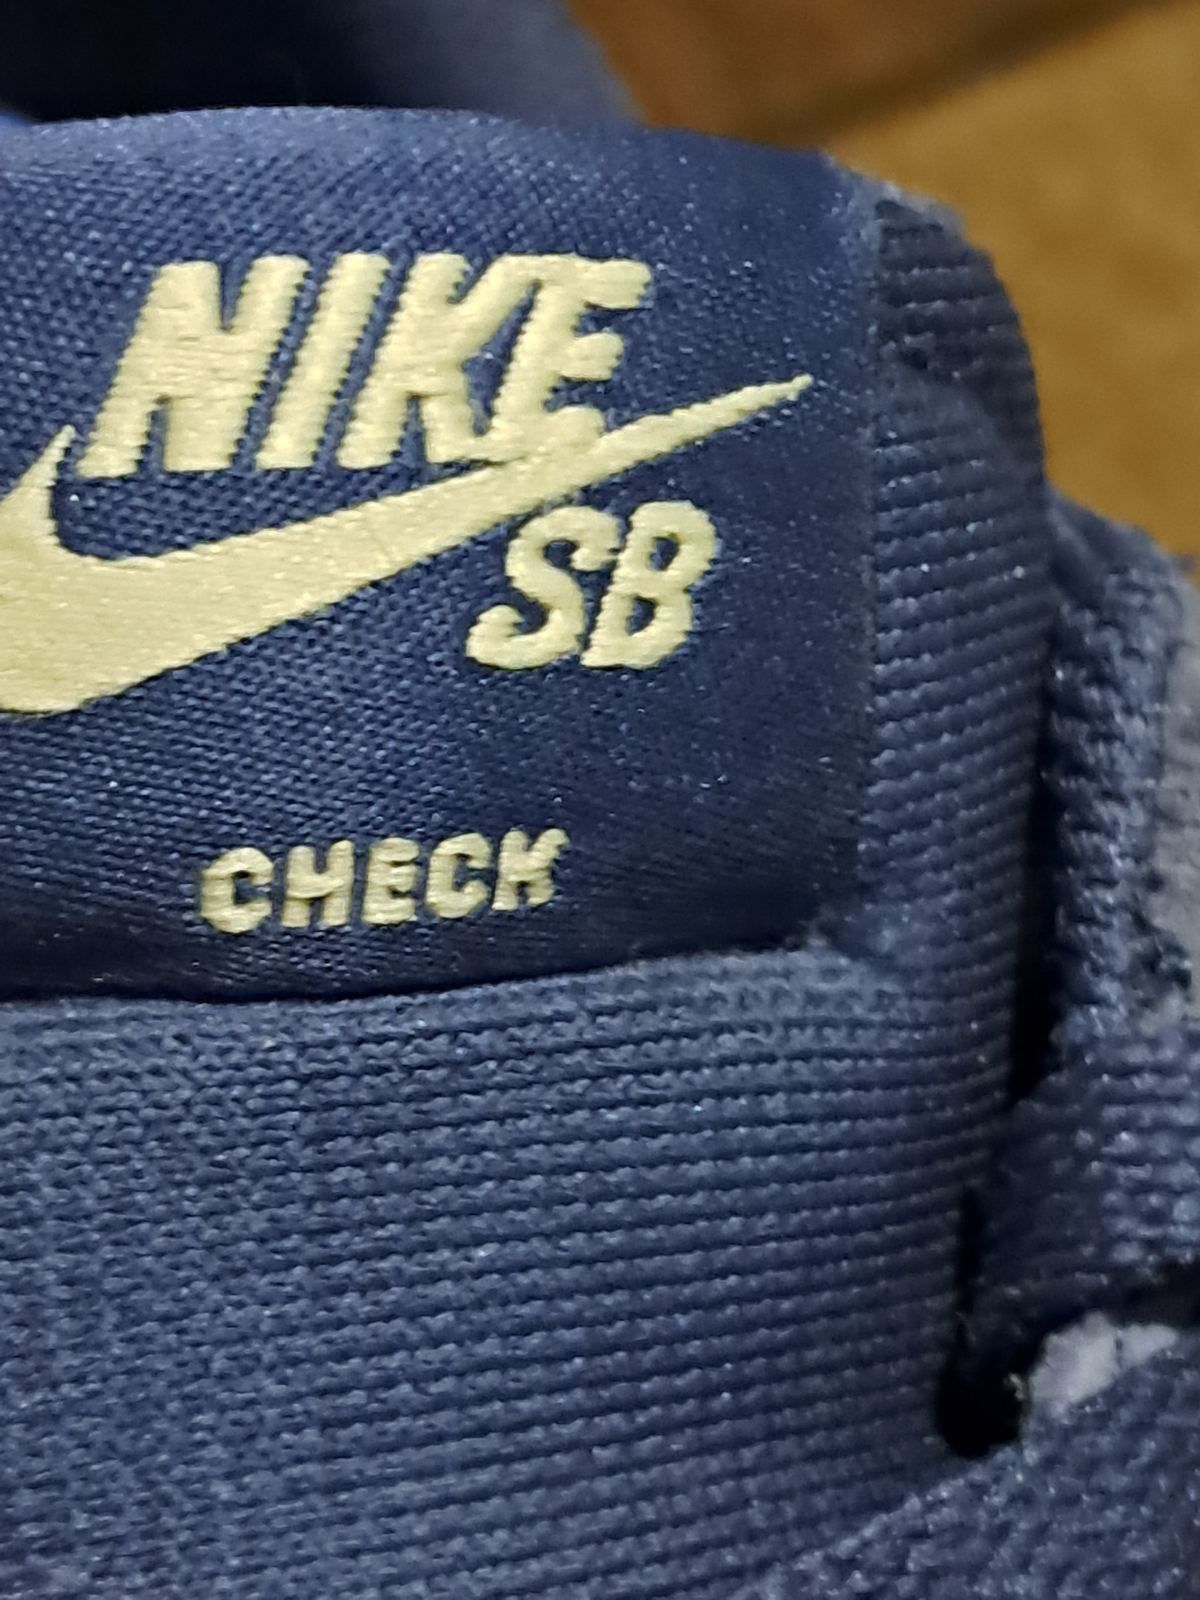 Шкіряні кросівки Nike SB check . Розмір 45.5 вкладка 29.5см